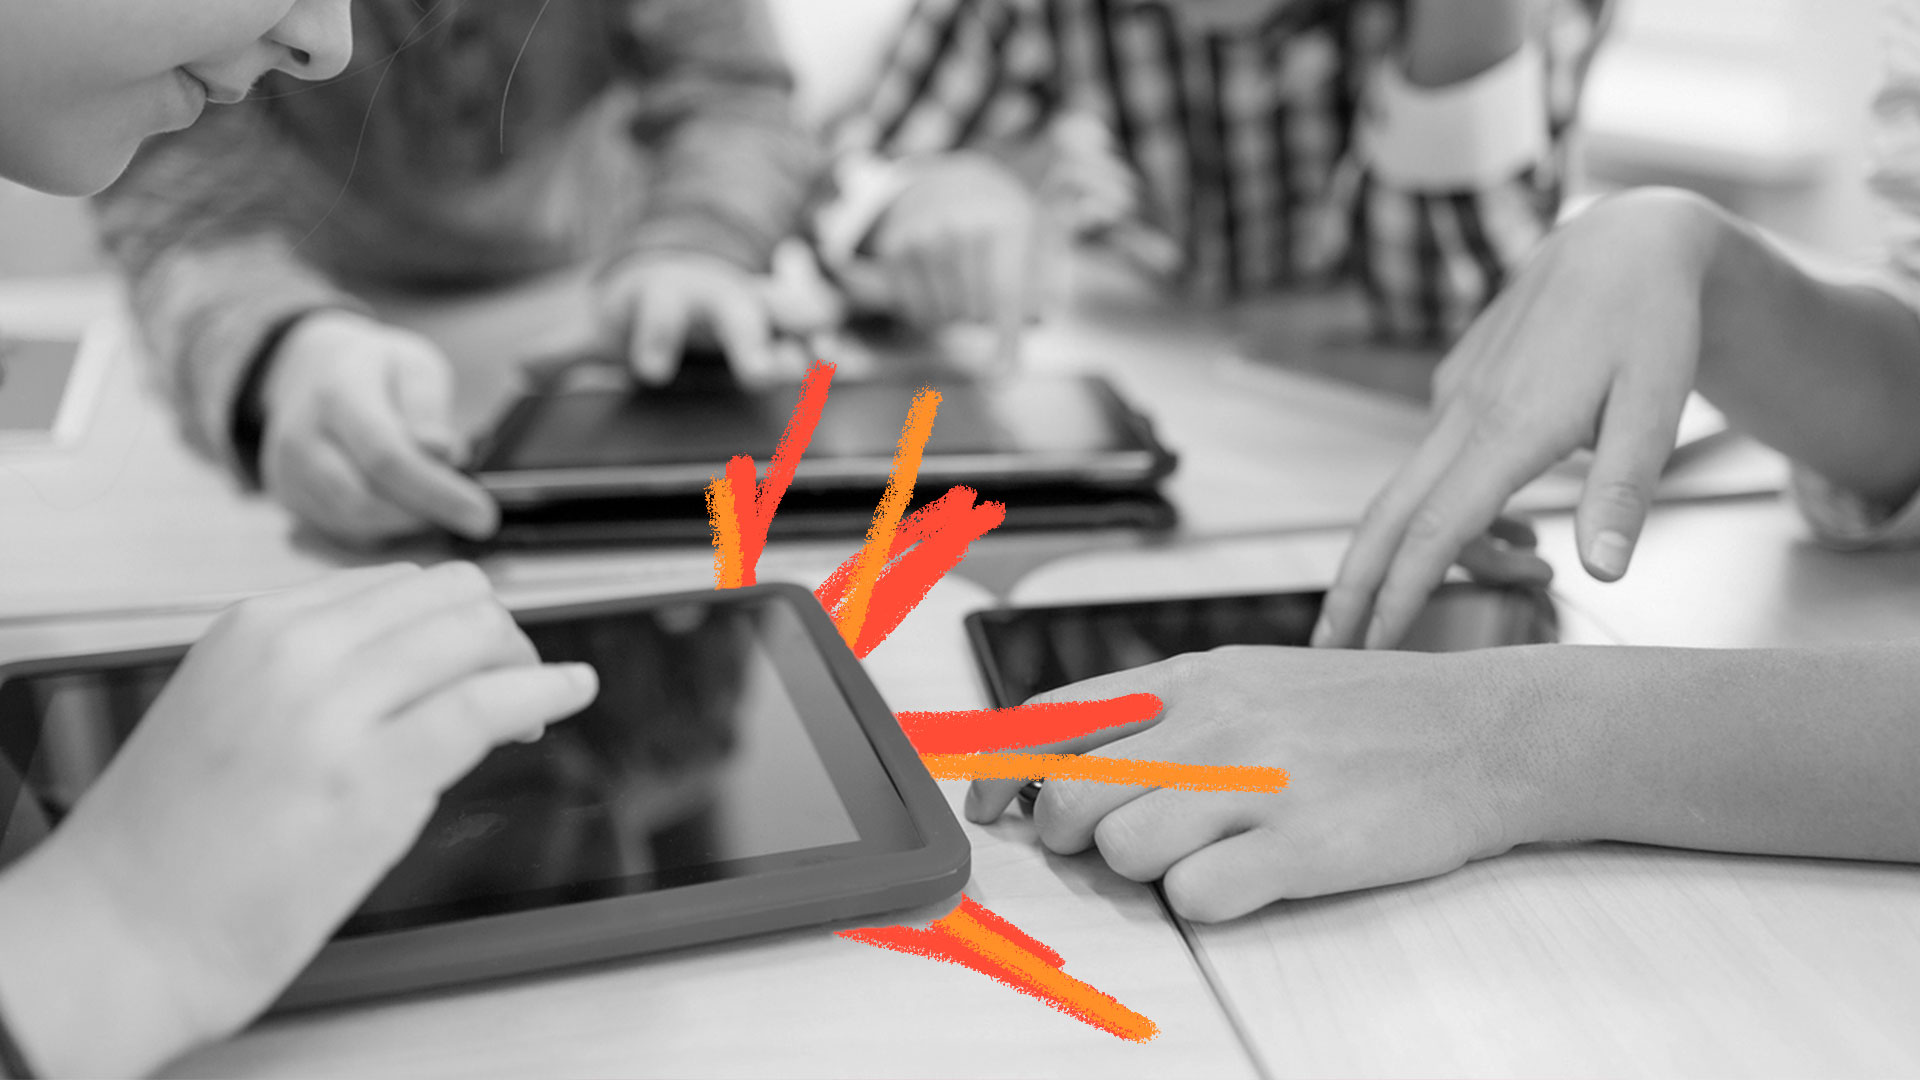 Diversas mãos de crianças mexendo em tablets. Foto em preto e branco, com intervenções coloridas em vermelho e laranja.